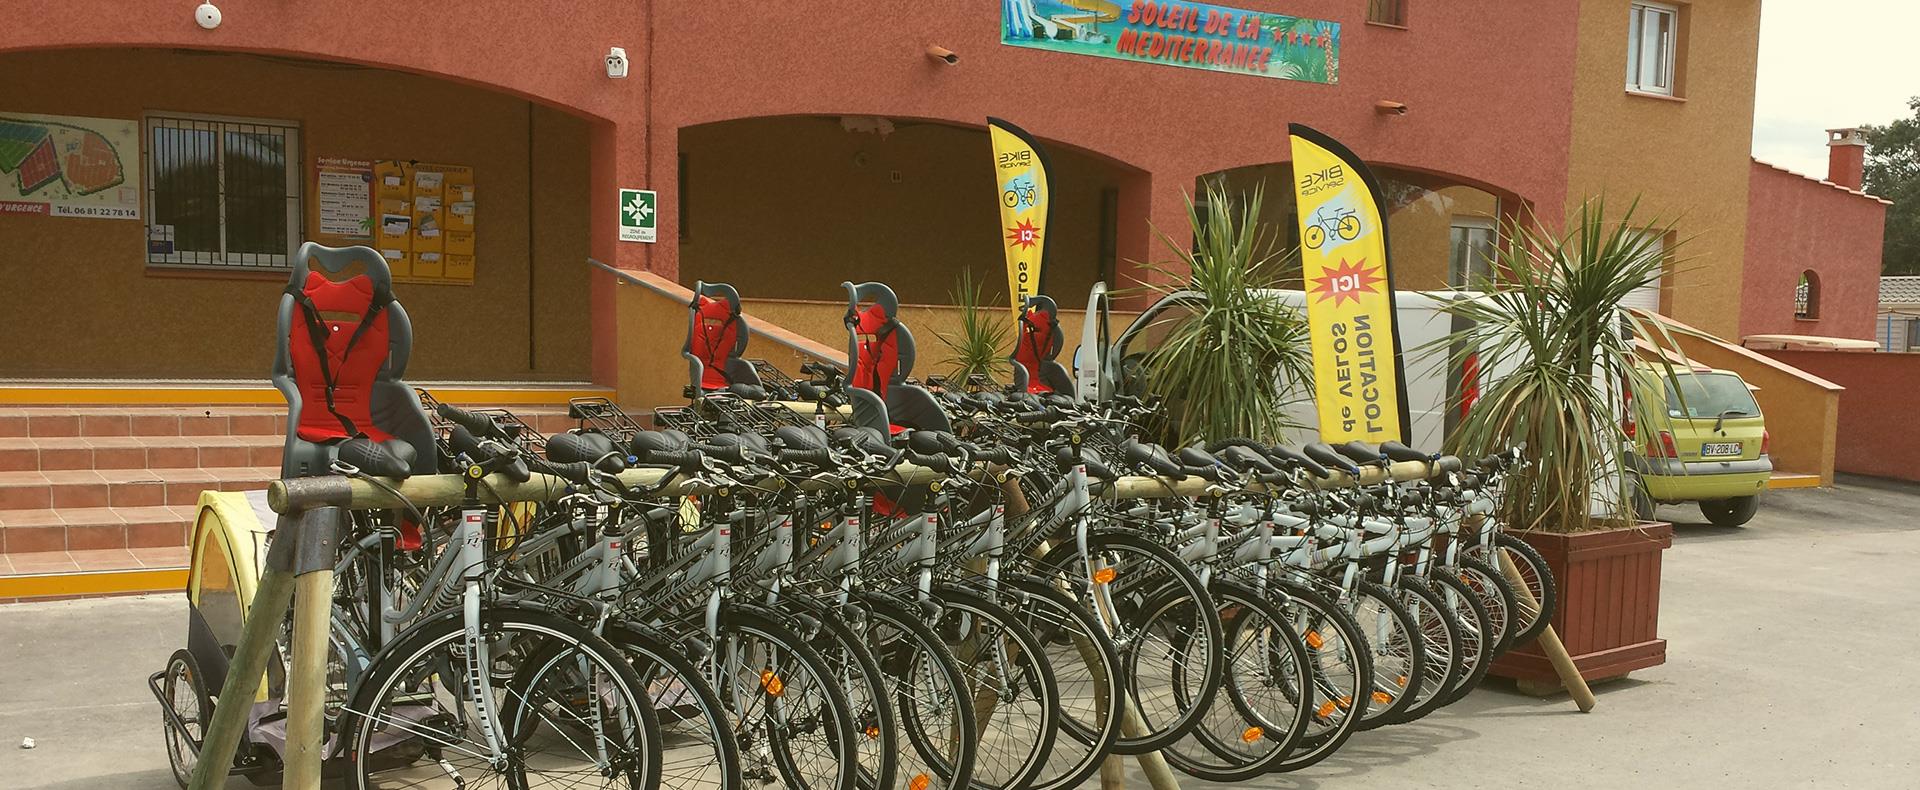 Location de flotte de vélo pour l'hôtellerie de plein air